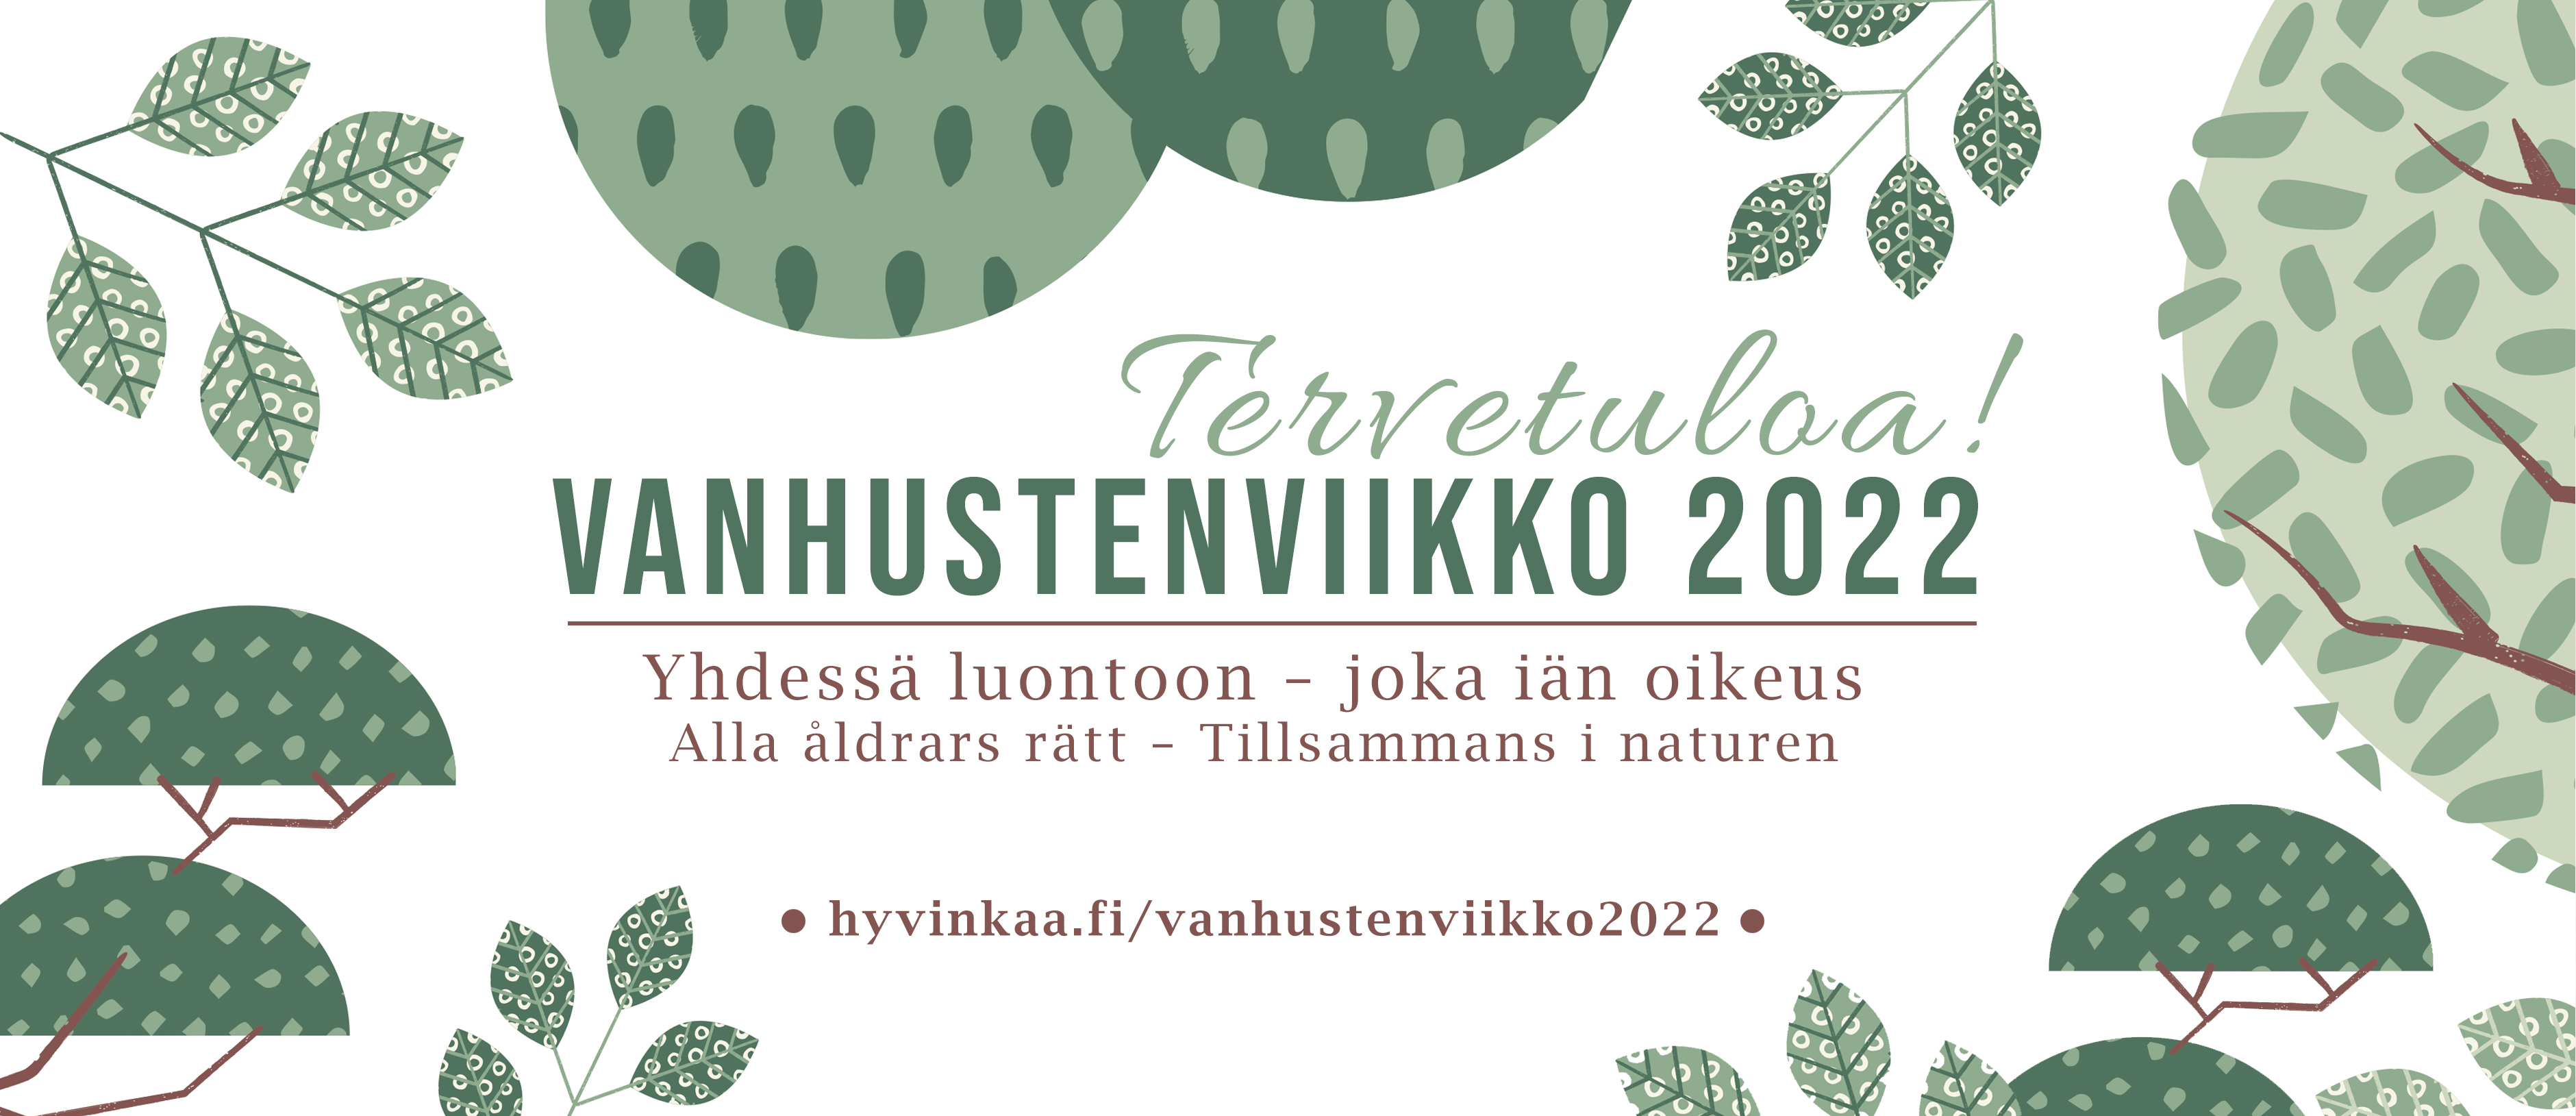 Kuvassa piirrettyjä puita ja lehtiä valkoisella taustalla. Keskellä otsikko: Vanhustenviikko 2022, Tervetuloa! Alla osoite sivulle hyvinkaa.fi/vanhustenviikko2022